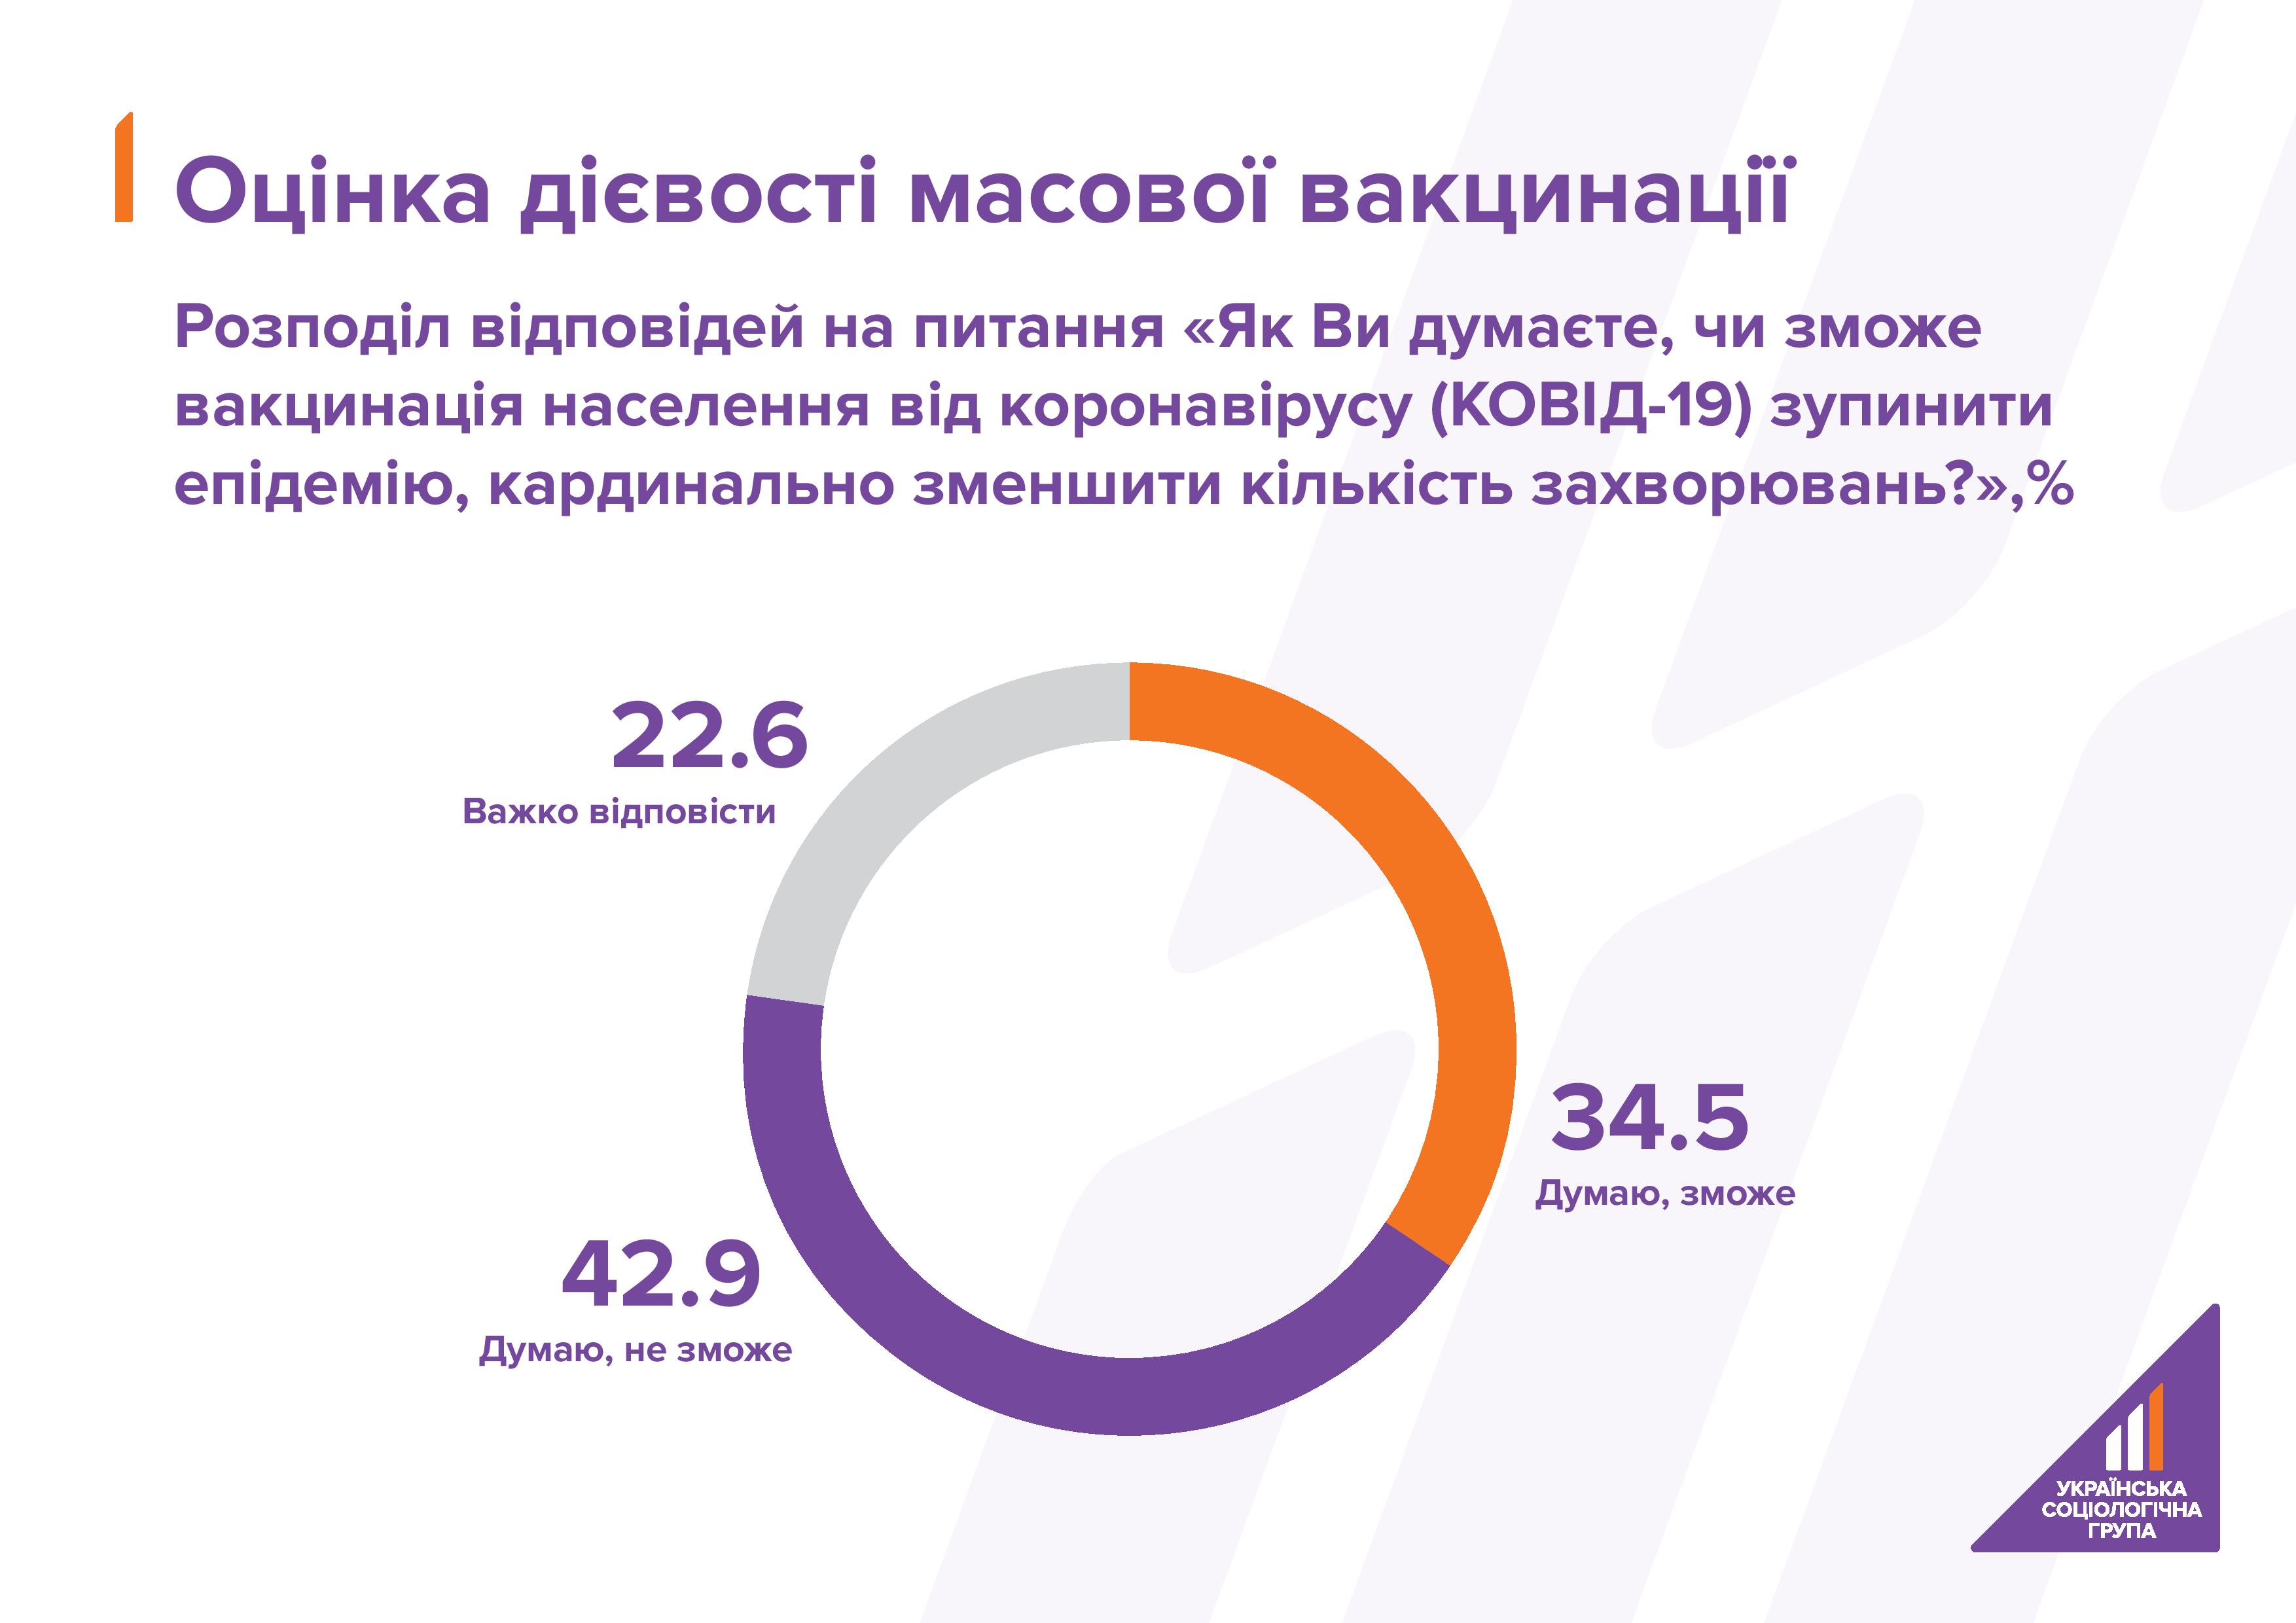 Каждый четвертый украинец не будет вакцинироваться от коронавируса - опрос. Скриншот